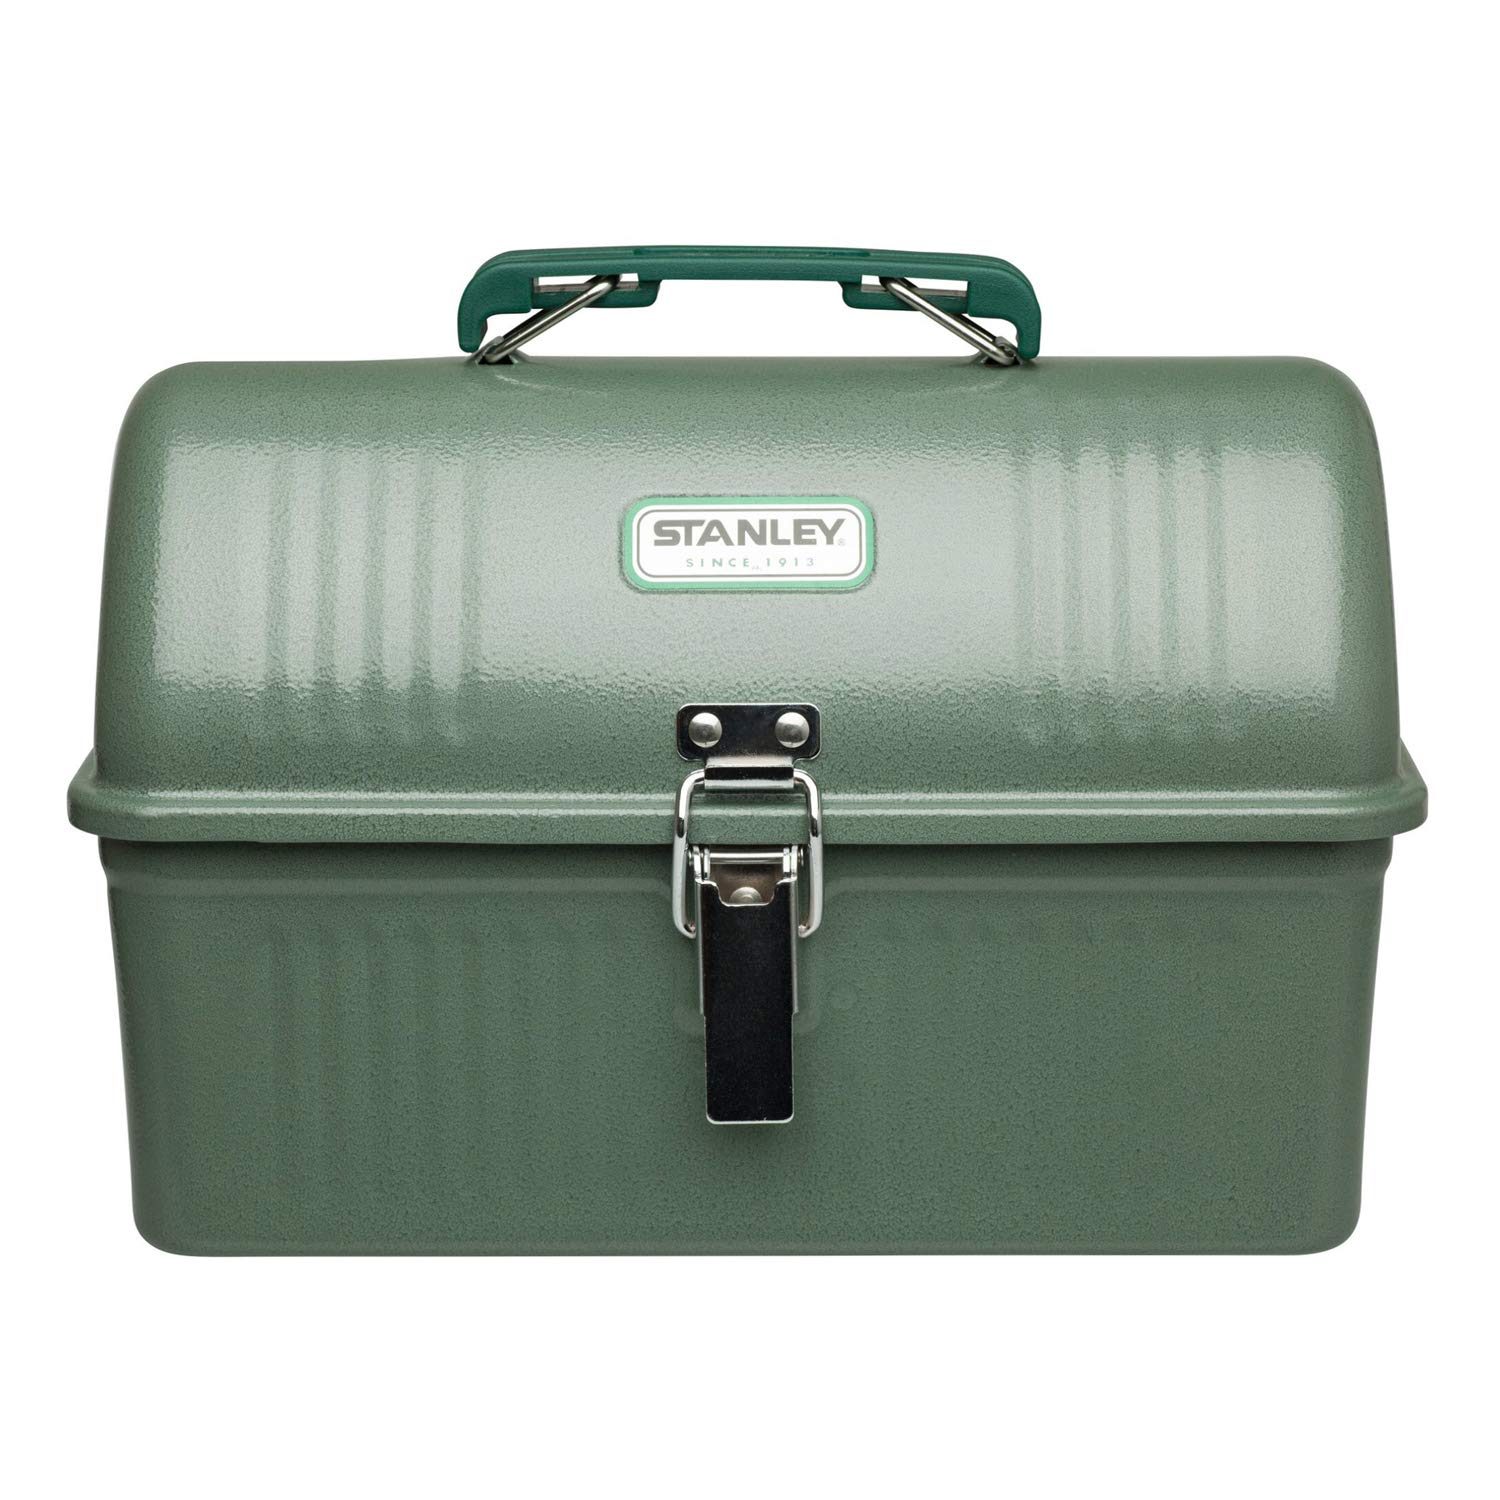 STANLEY PMI กล่องจัดเก็บอเนกประสงค์ Classic Steel Lunch Box 5.2 ลิตร